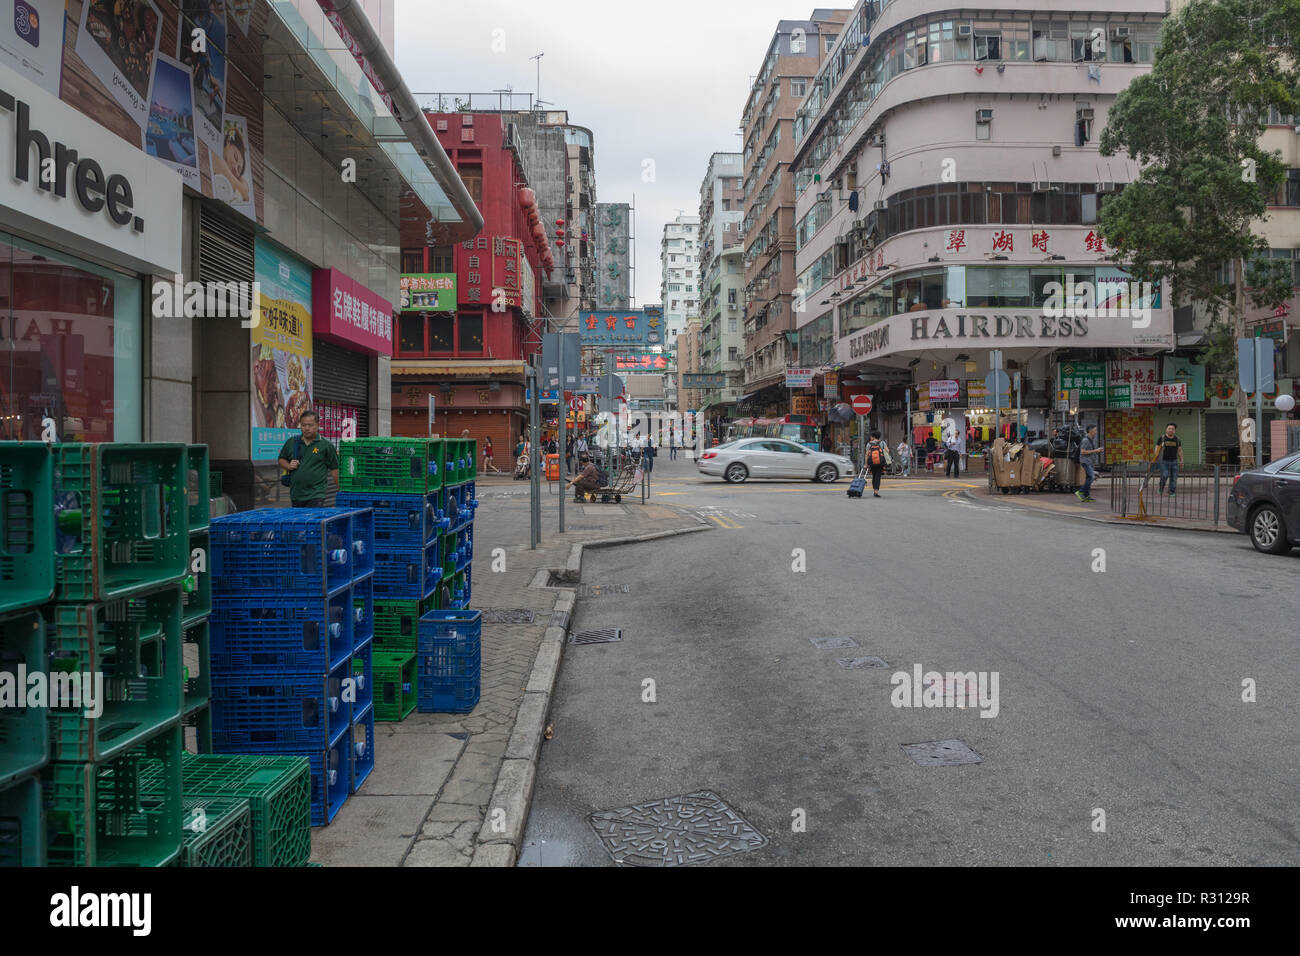 KOWLOON, HONG KONG - APRIL 21, 2017: Water Bottles Crates Delivery at Mong Kok in Kowloon, Hong Kong. Stock Photo